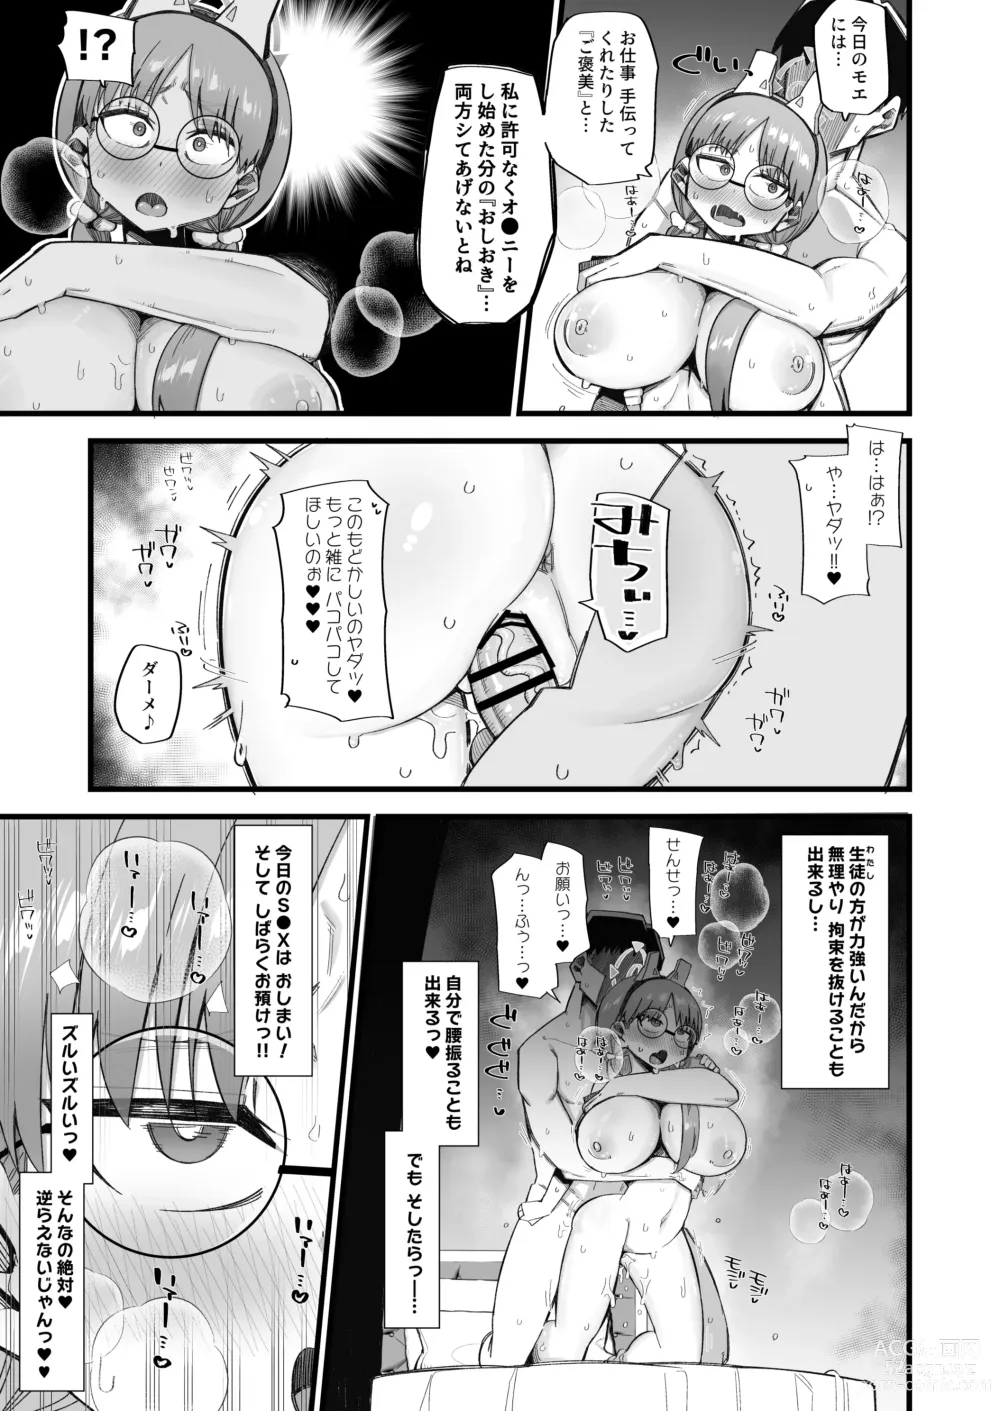 Page 15 of doujinshi Moe wa Sensei de Hametsu shitai 2